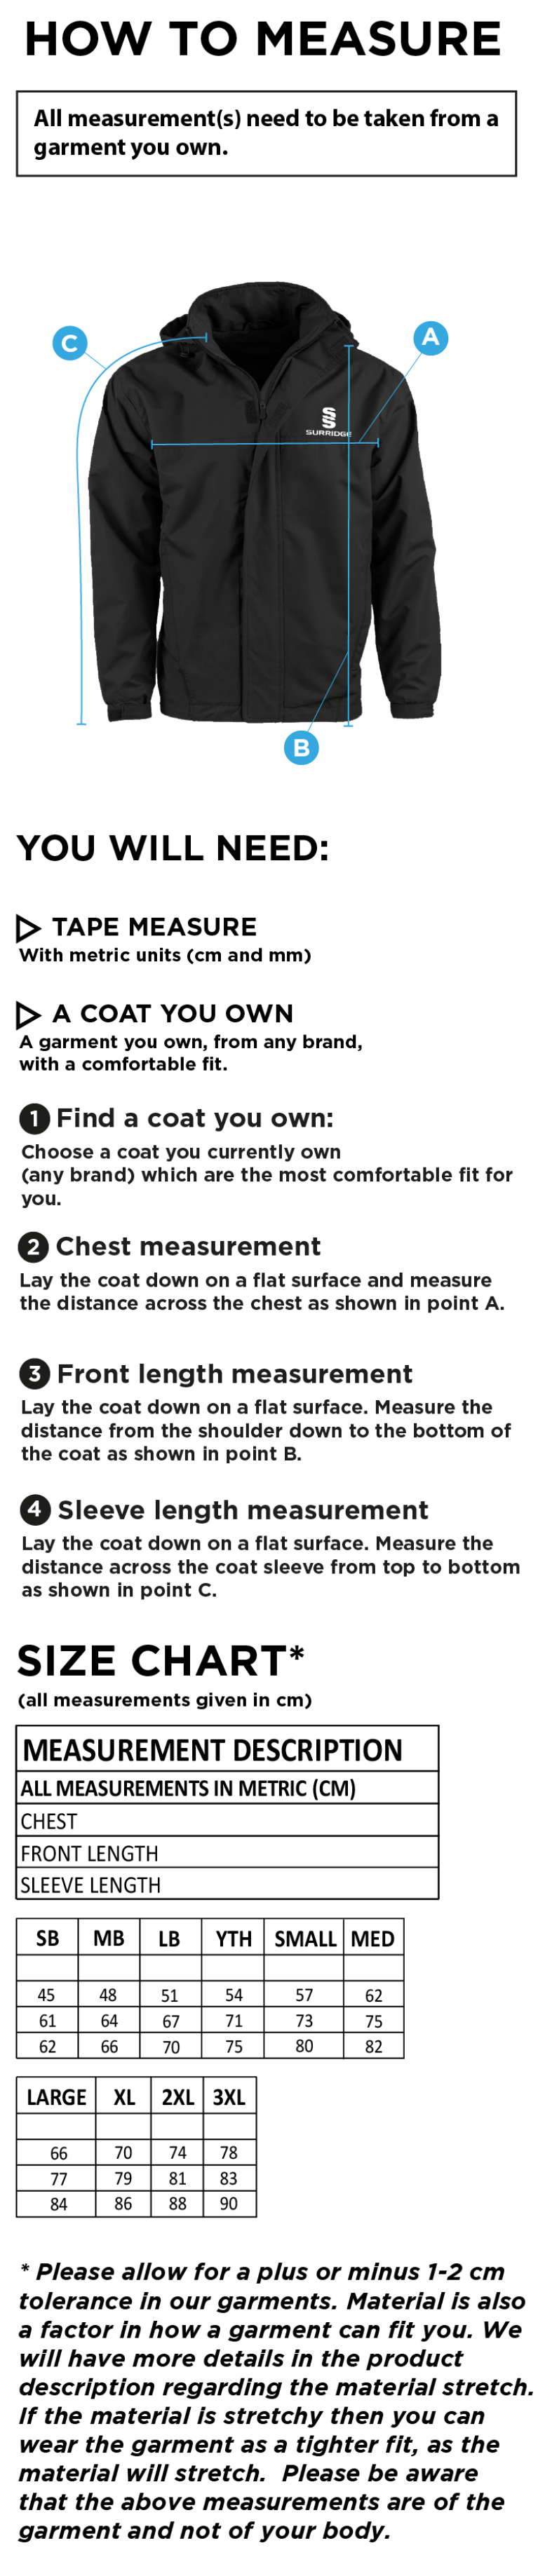 Darwen FC - Dual Fleece Lined Jacket : Navy - Size Guide